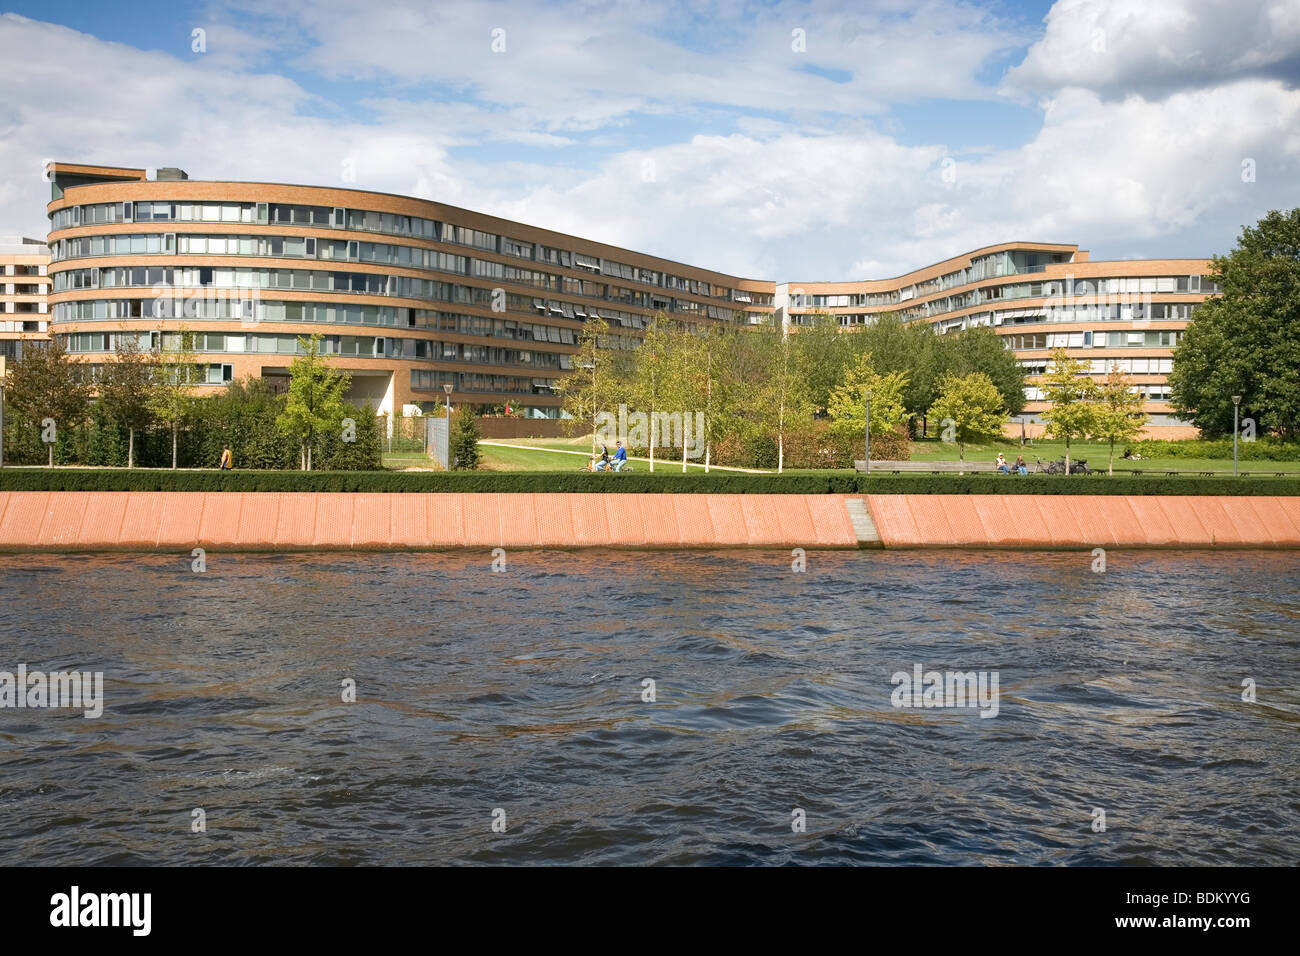 Werder Moabiter - zona residencial para empleados del gobierno, arquitecto Georg Bumiller, Berlín, Alemania Foto de stock